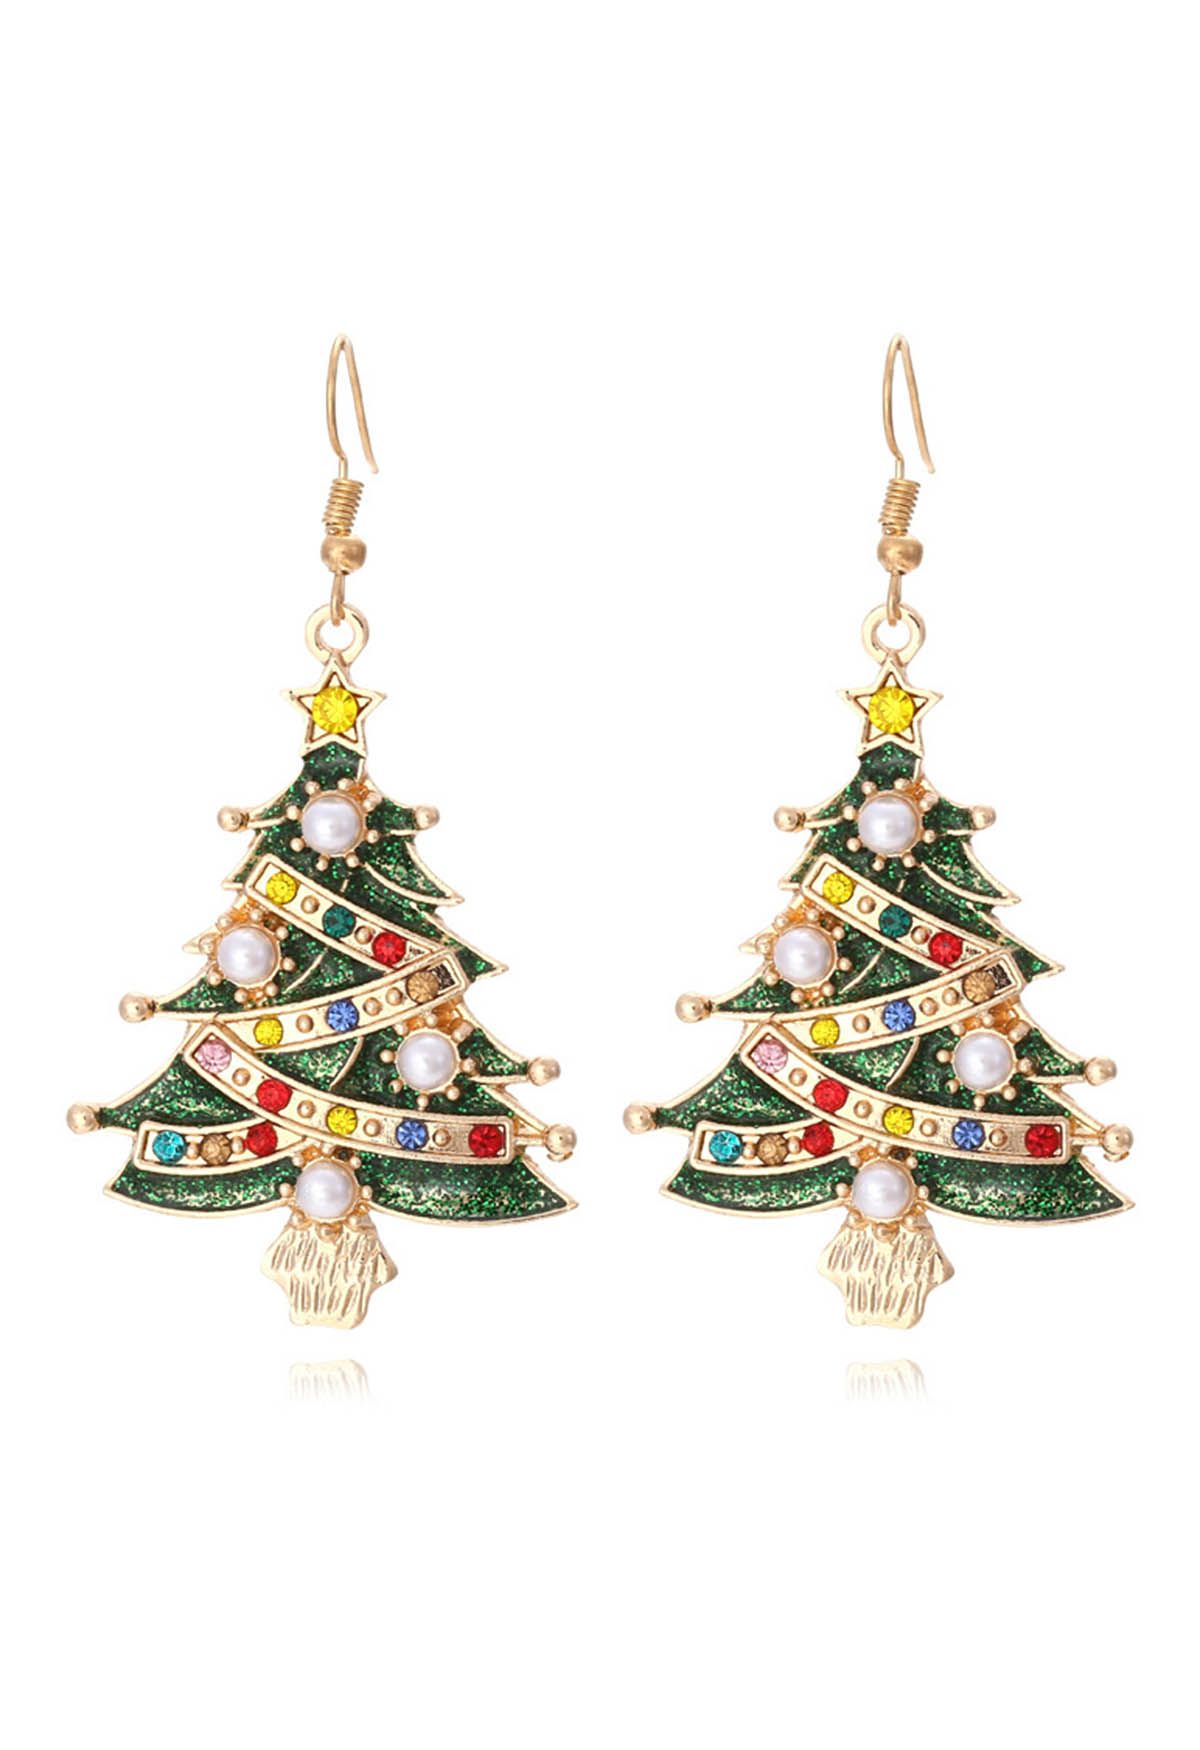 Glamouröse Weihnachtsbaum-Ölpest-Ohrringe